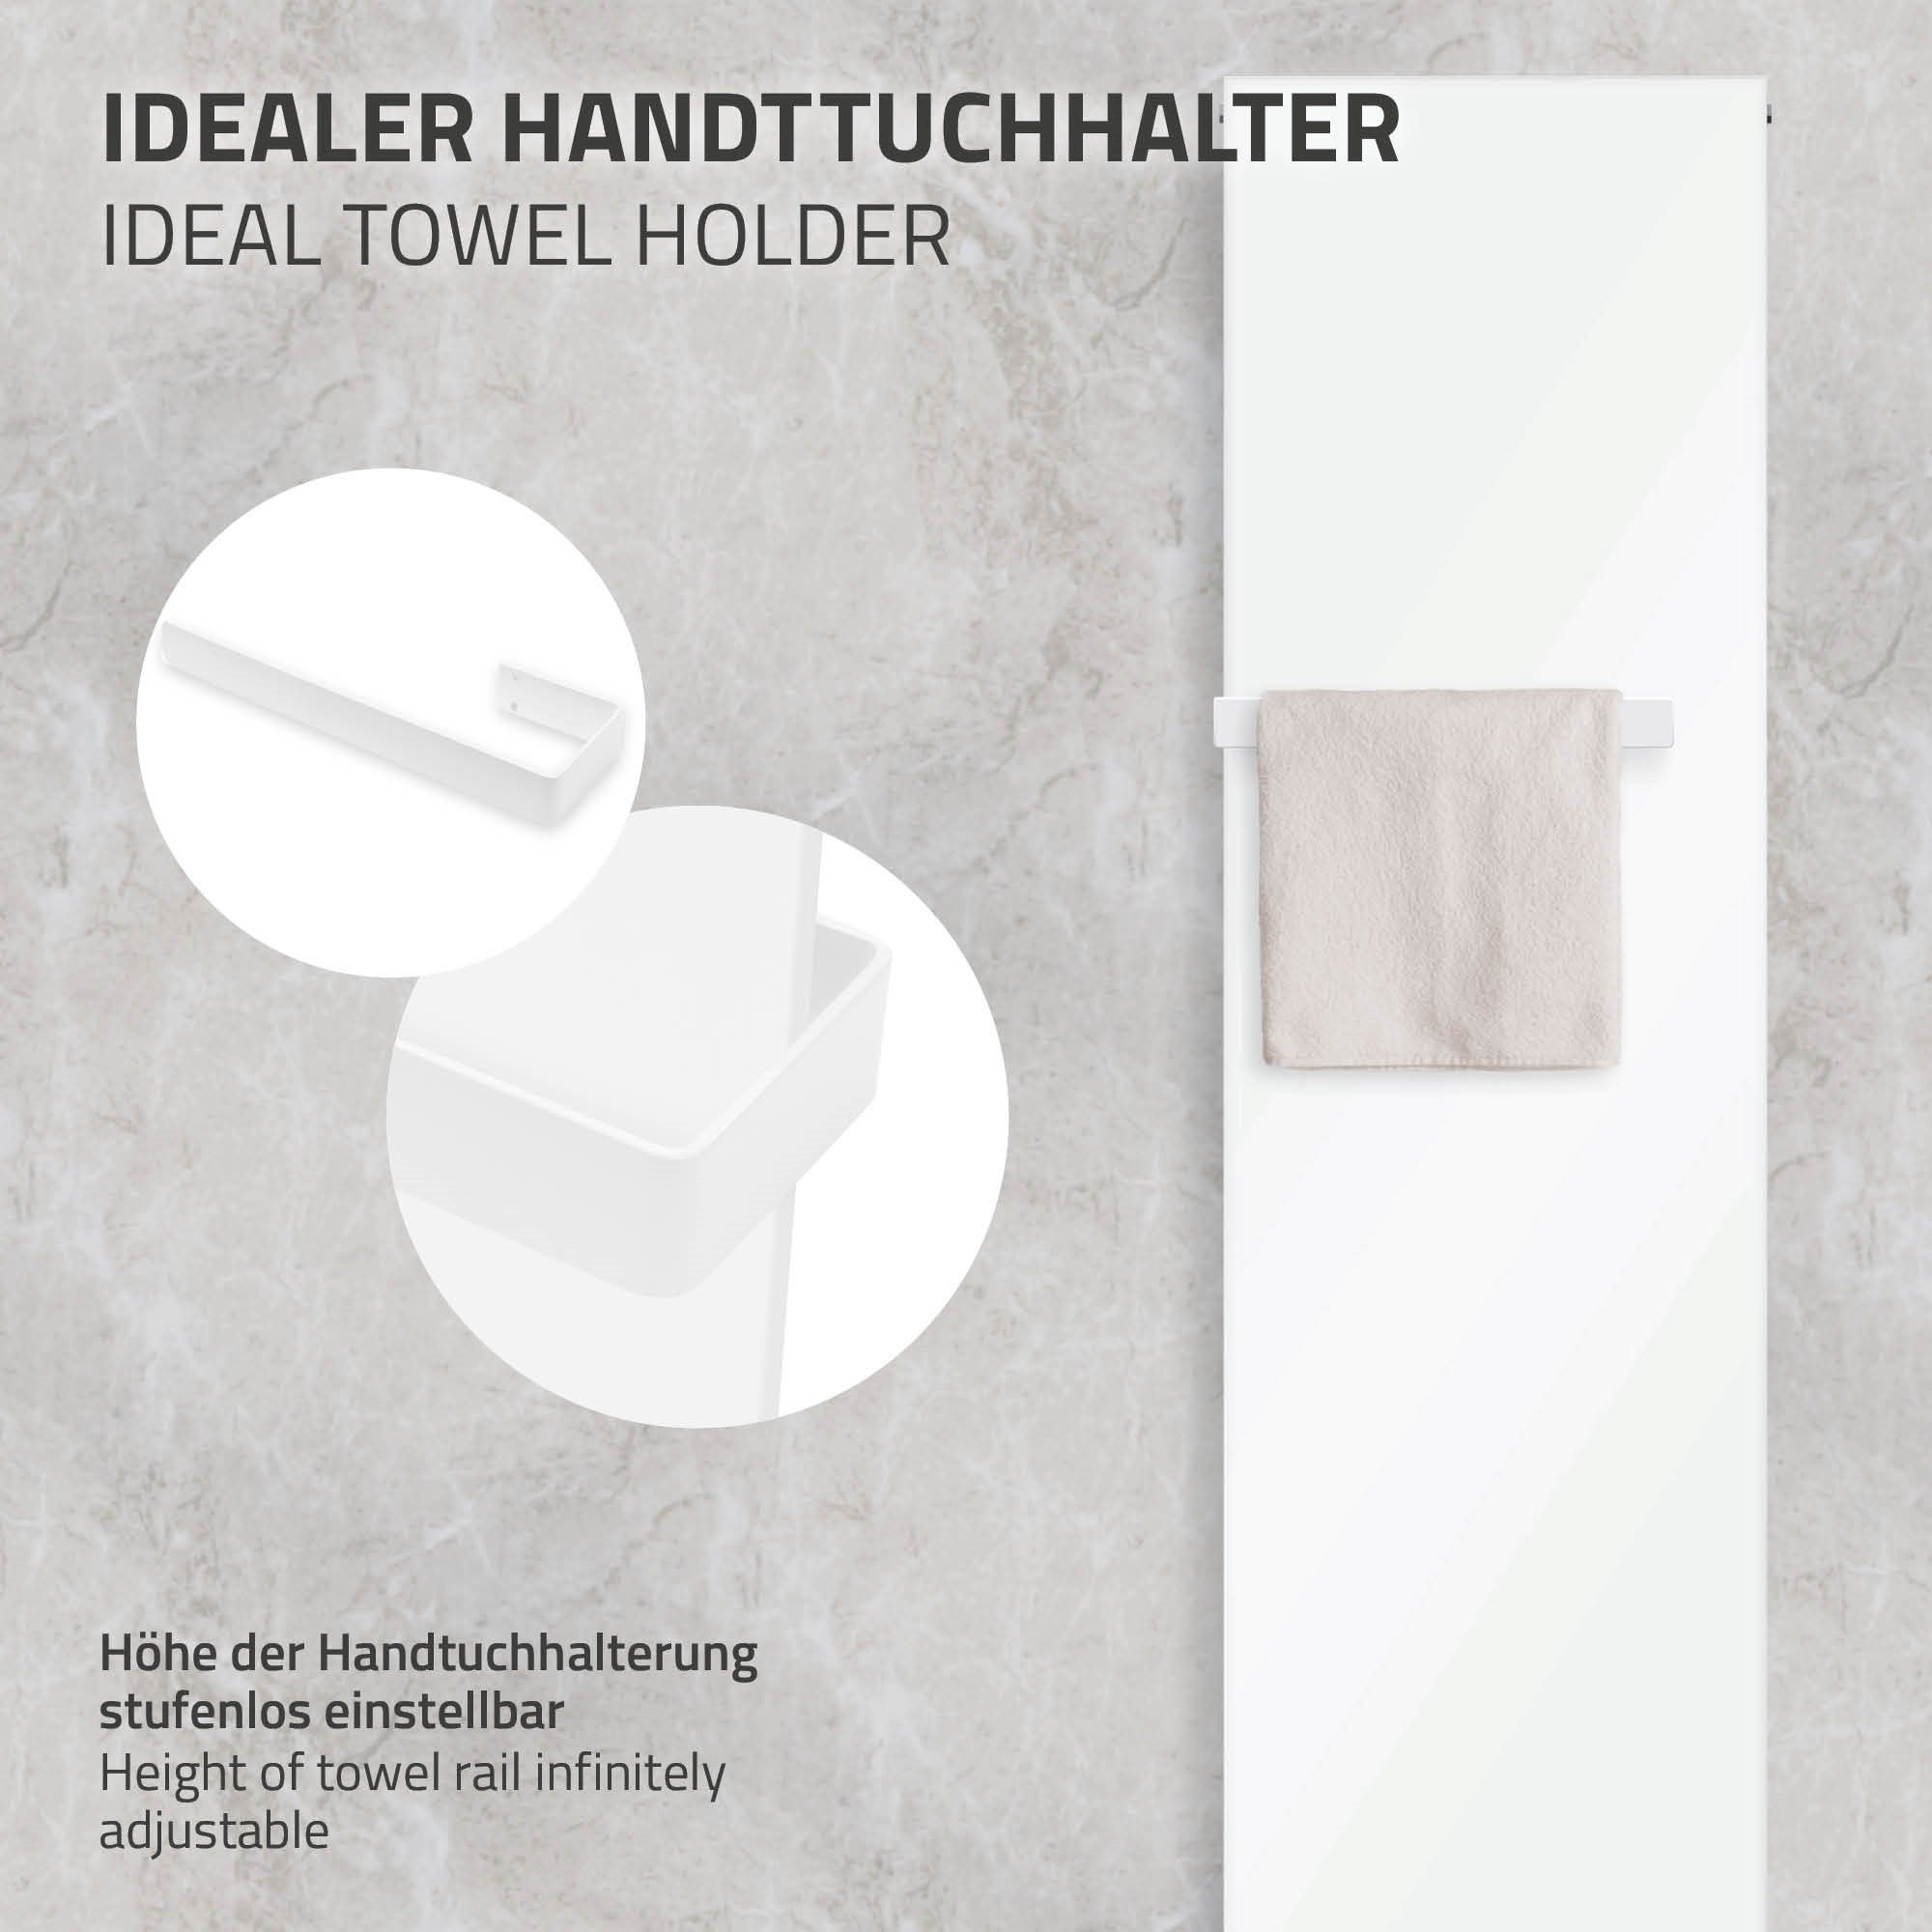 LuxeBath Badheizkörper Designheizkörper Handtuchhalter Mittelanschluss Weiß Handtuchwärmer, 452x1600mm Handtuchheizkörper